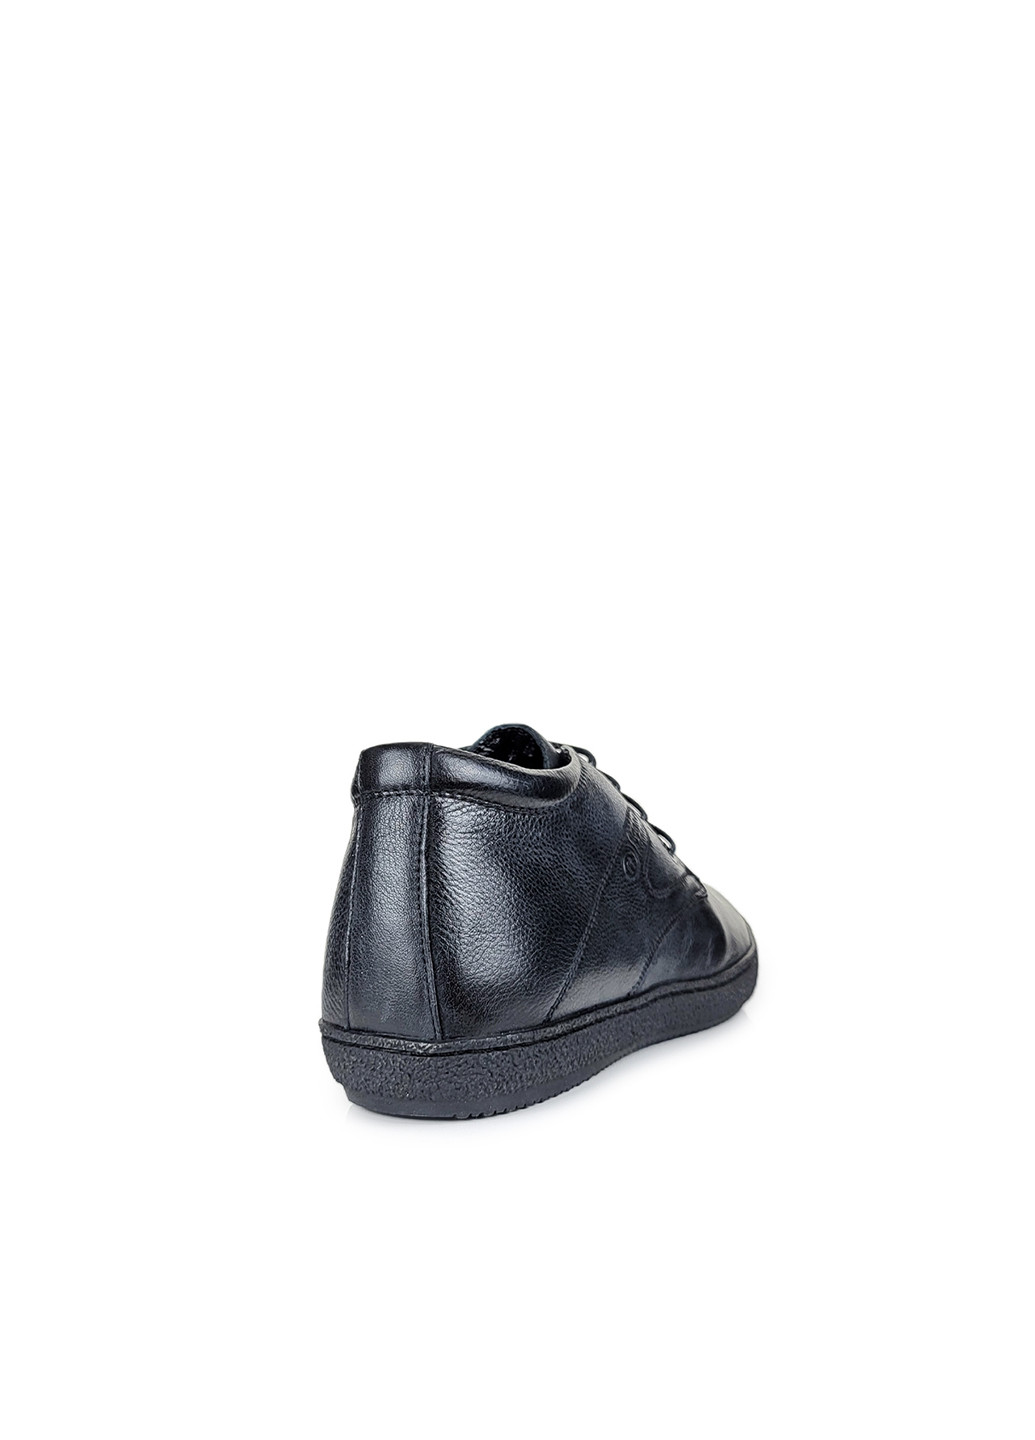 Черные зимние ботинки зимние мужские повседневные из натуральной кожи с натуральным мехом черные,,yd5160-101чернкб,39 Ronny